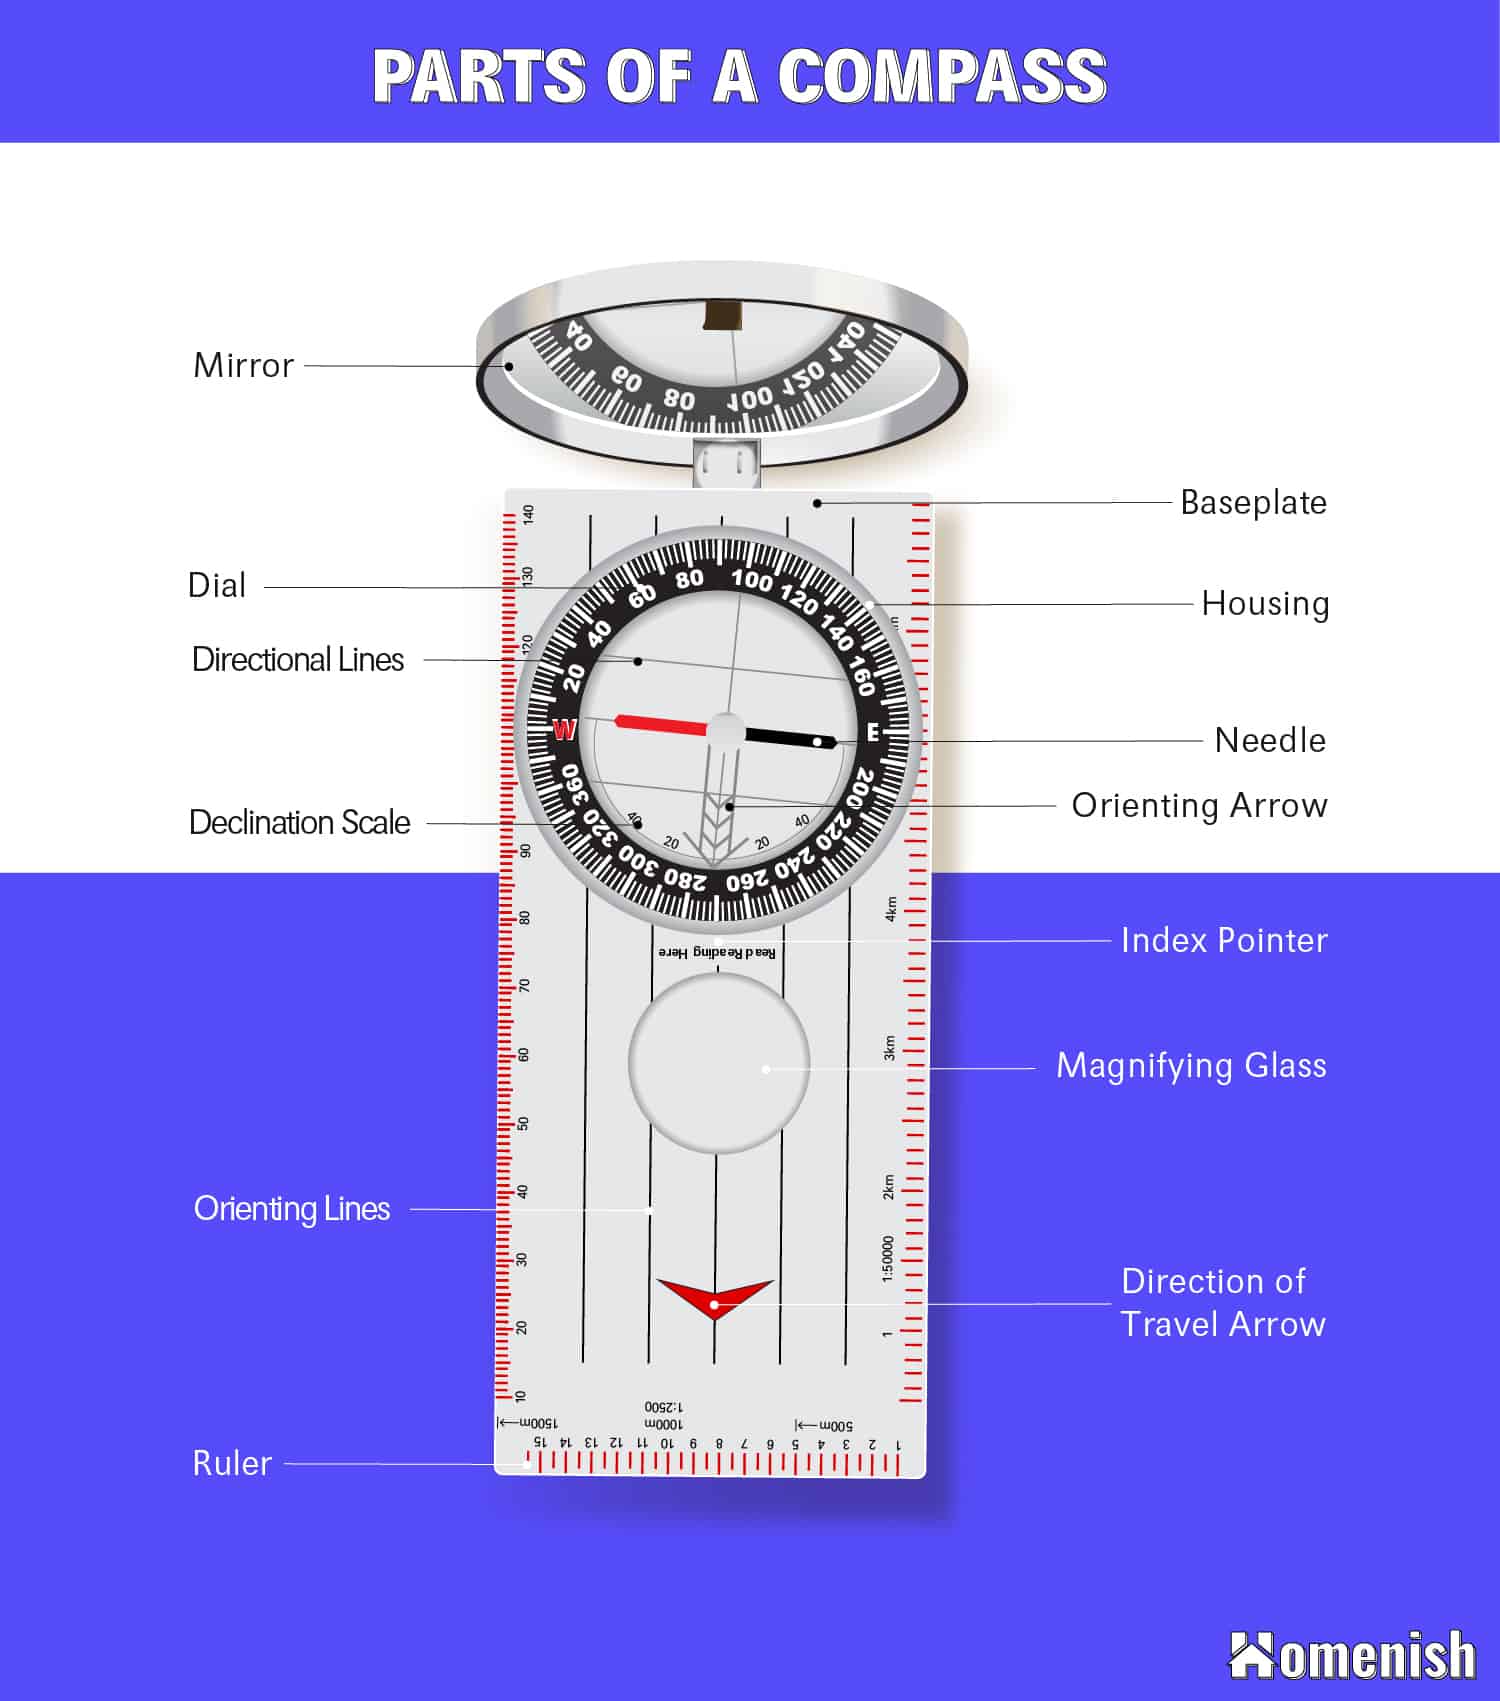 Parts of a Compass Diagram